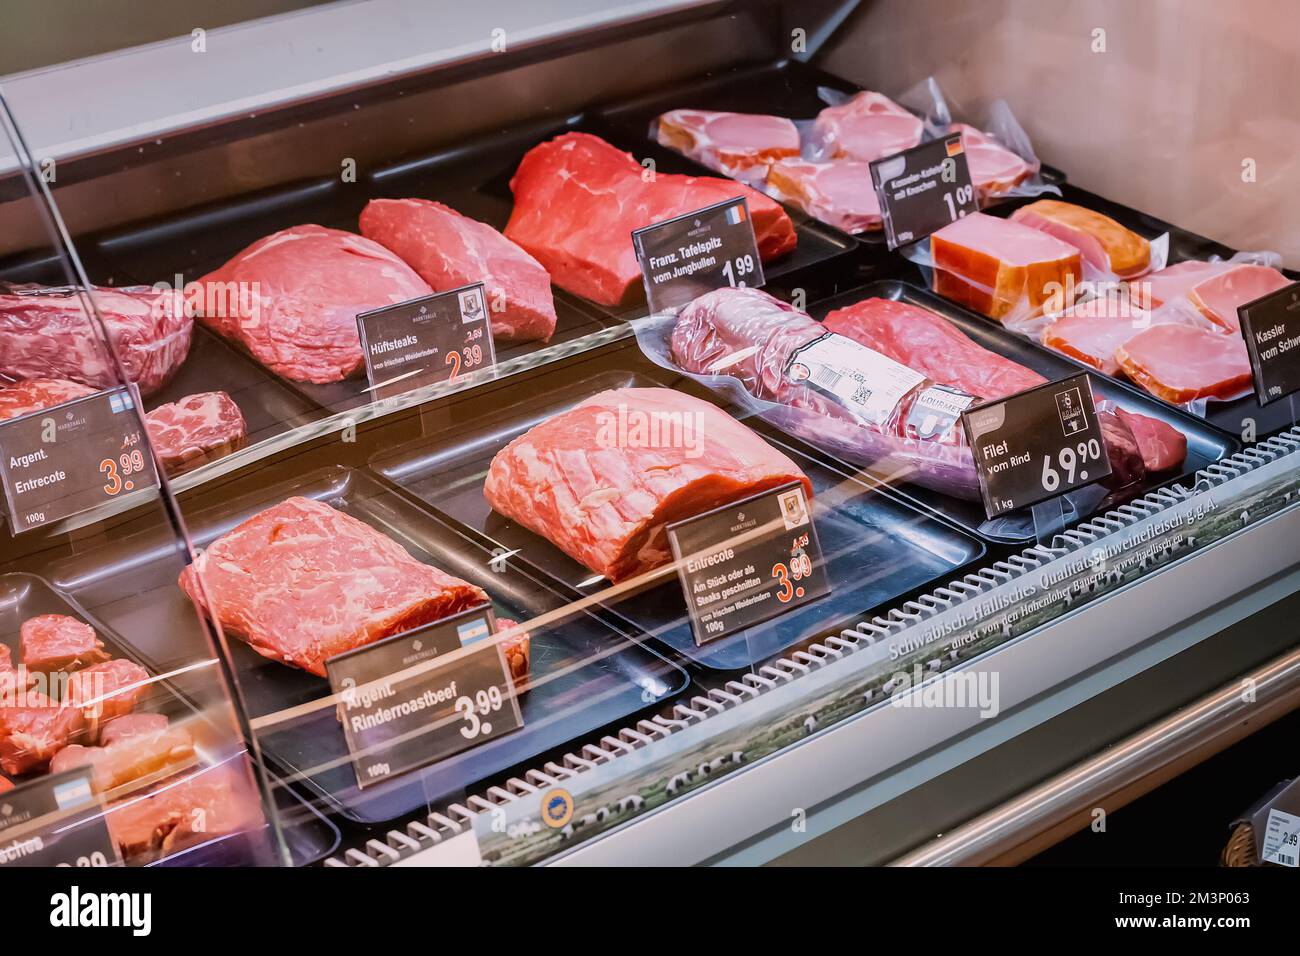 29. Juli 2022, Köln, Deutschland: Metzgerausstellung im Supermarkt mit Fleischsortiment Stockfoto